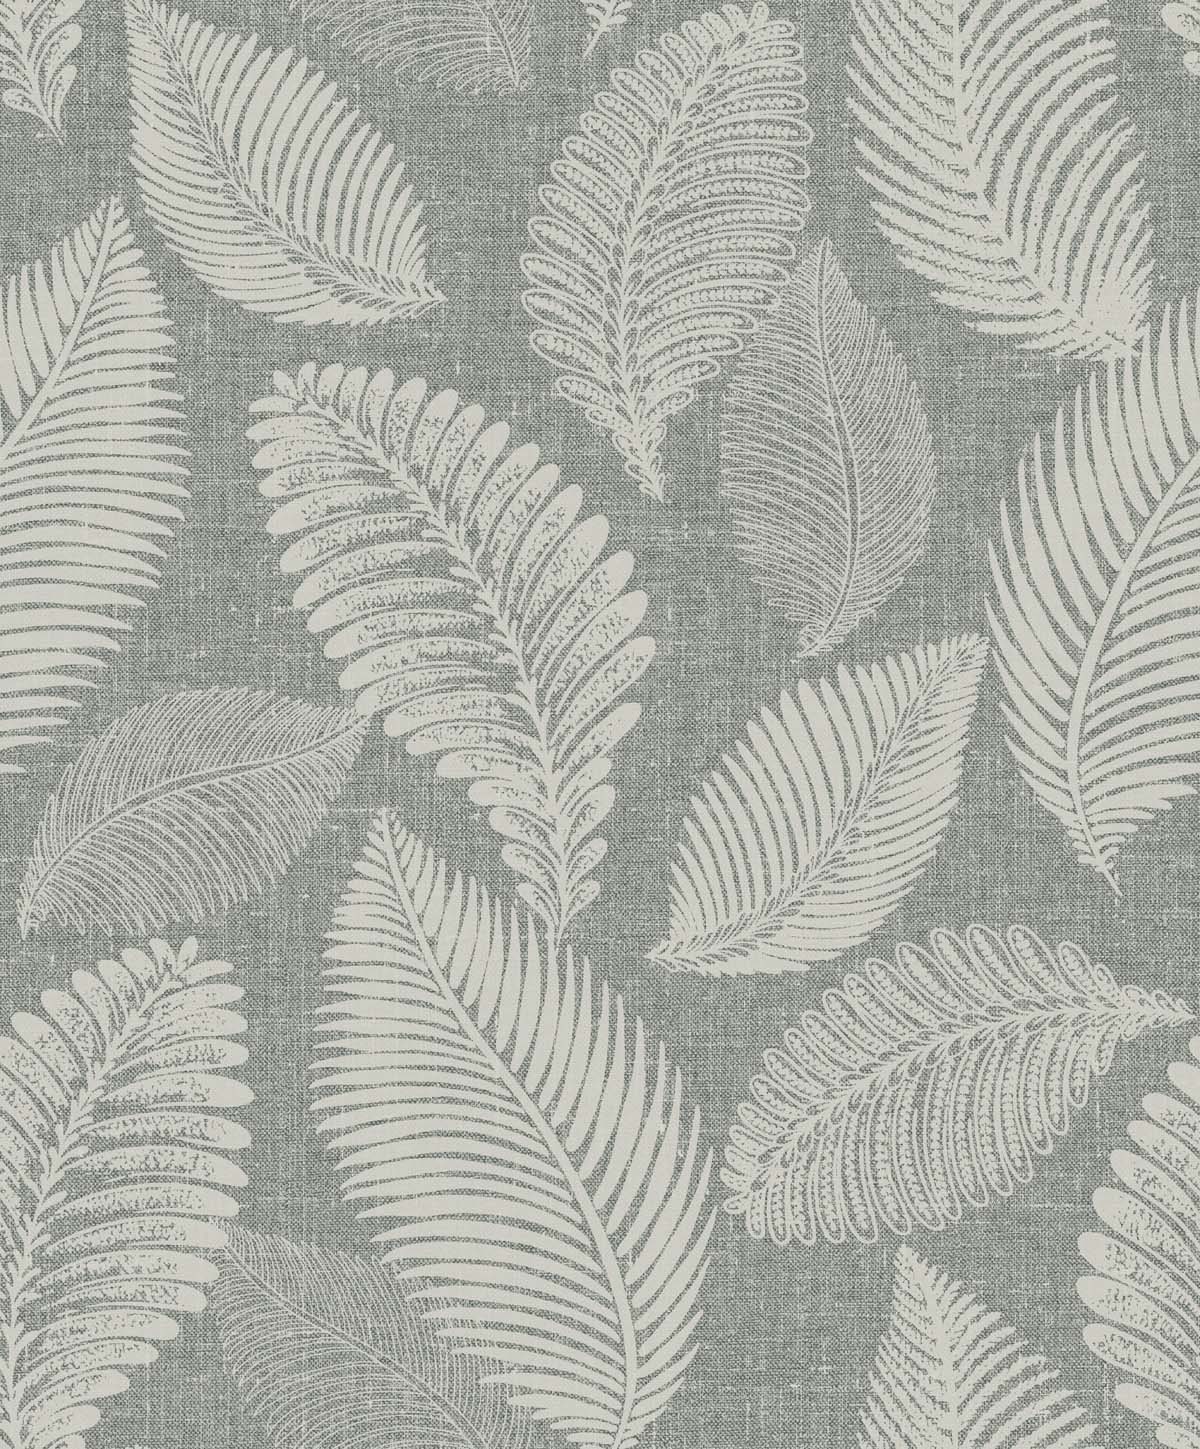 EW10010 | Tossed Leaves, Grey - Seabrook Designs Wallpaper